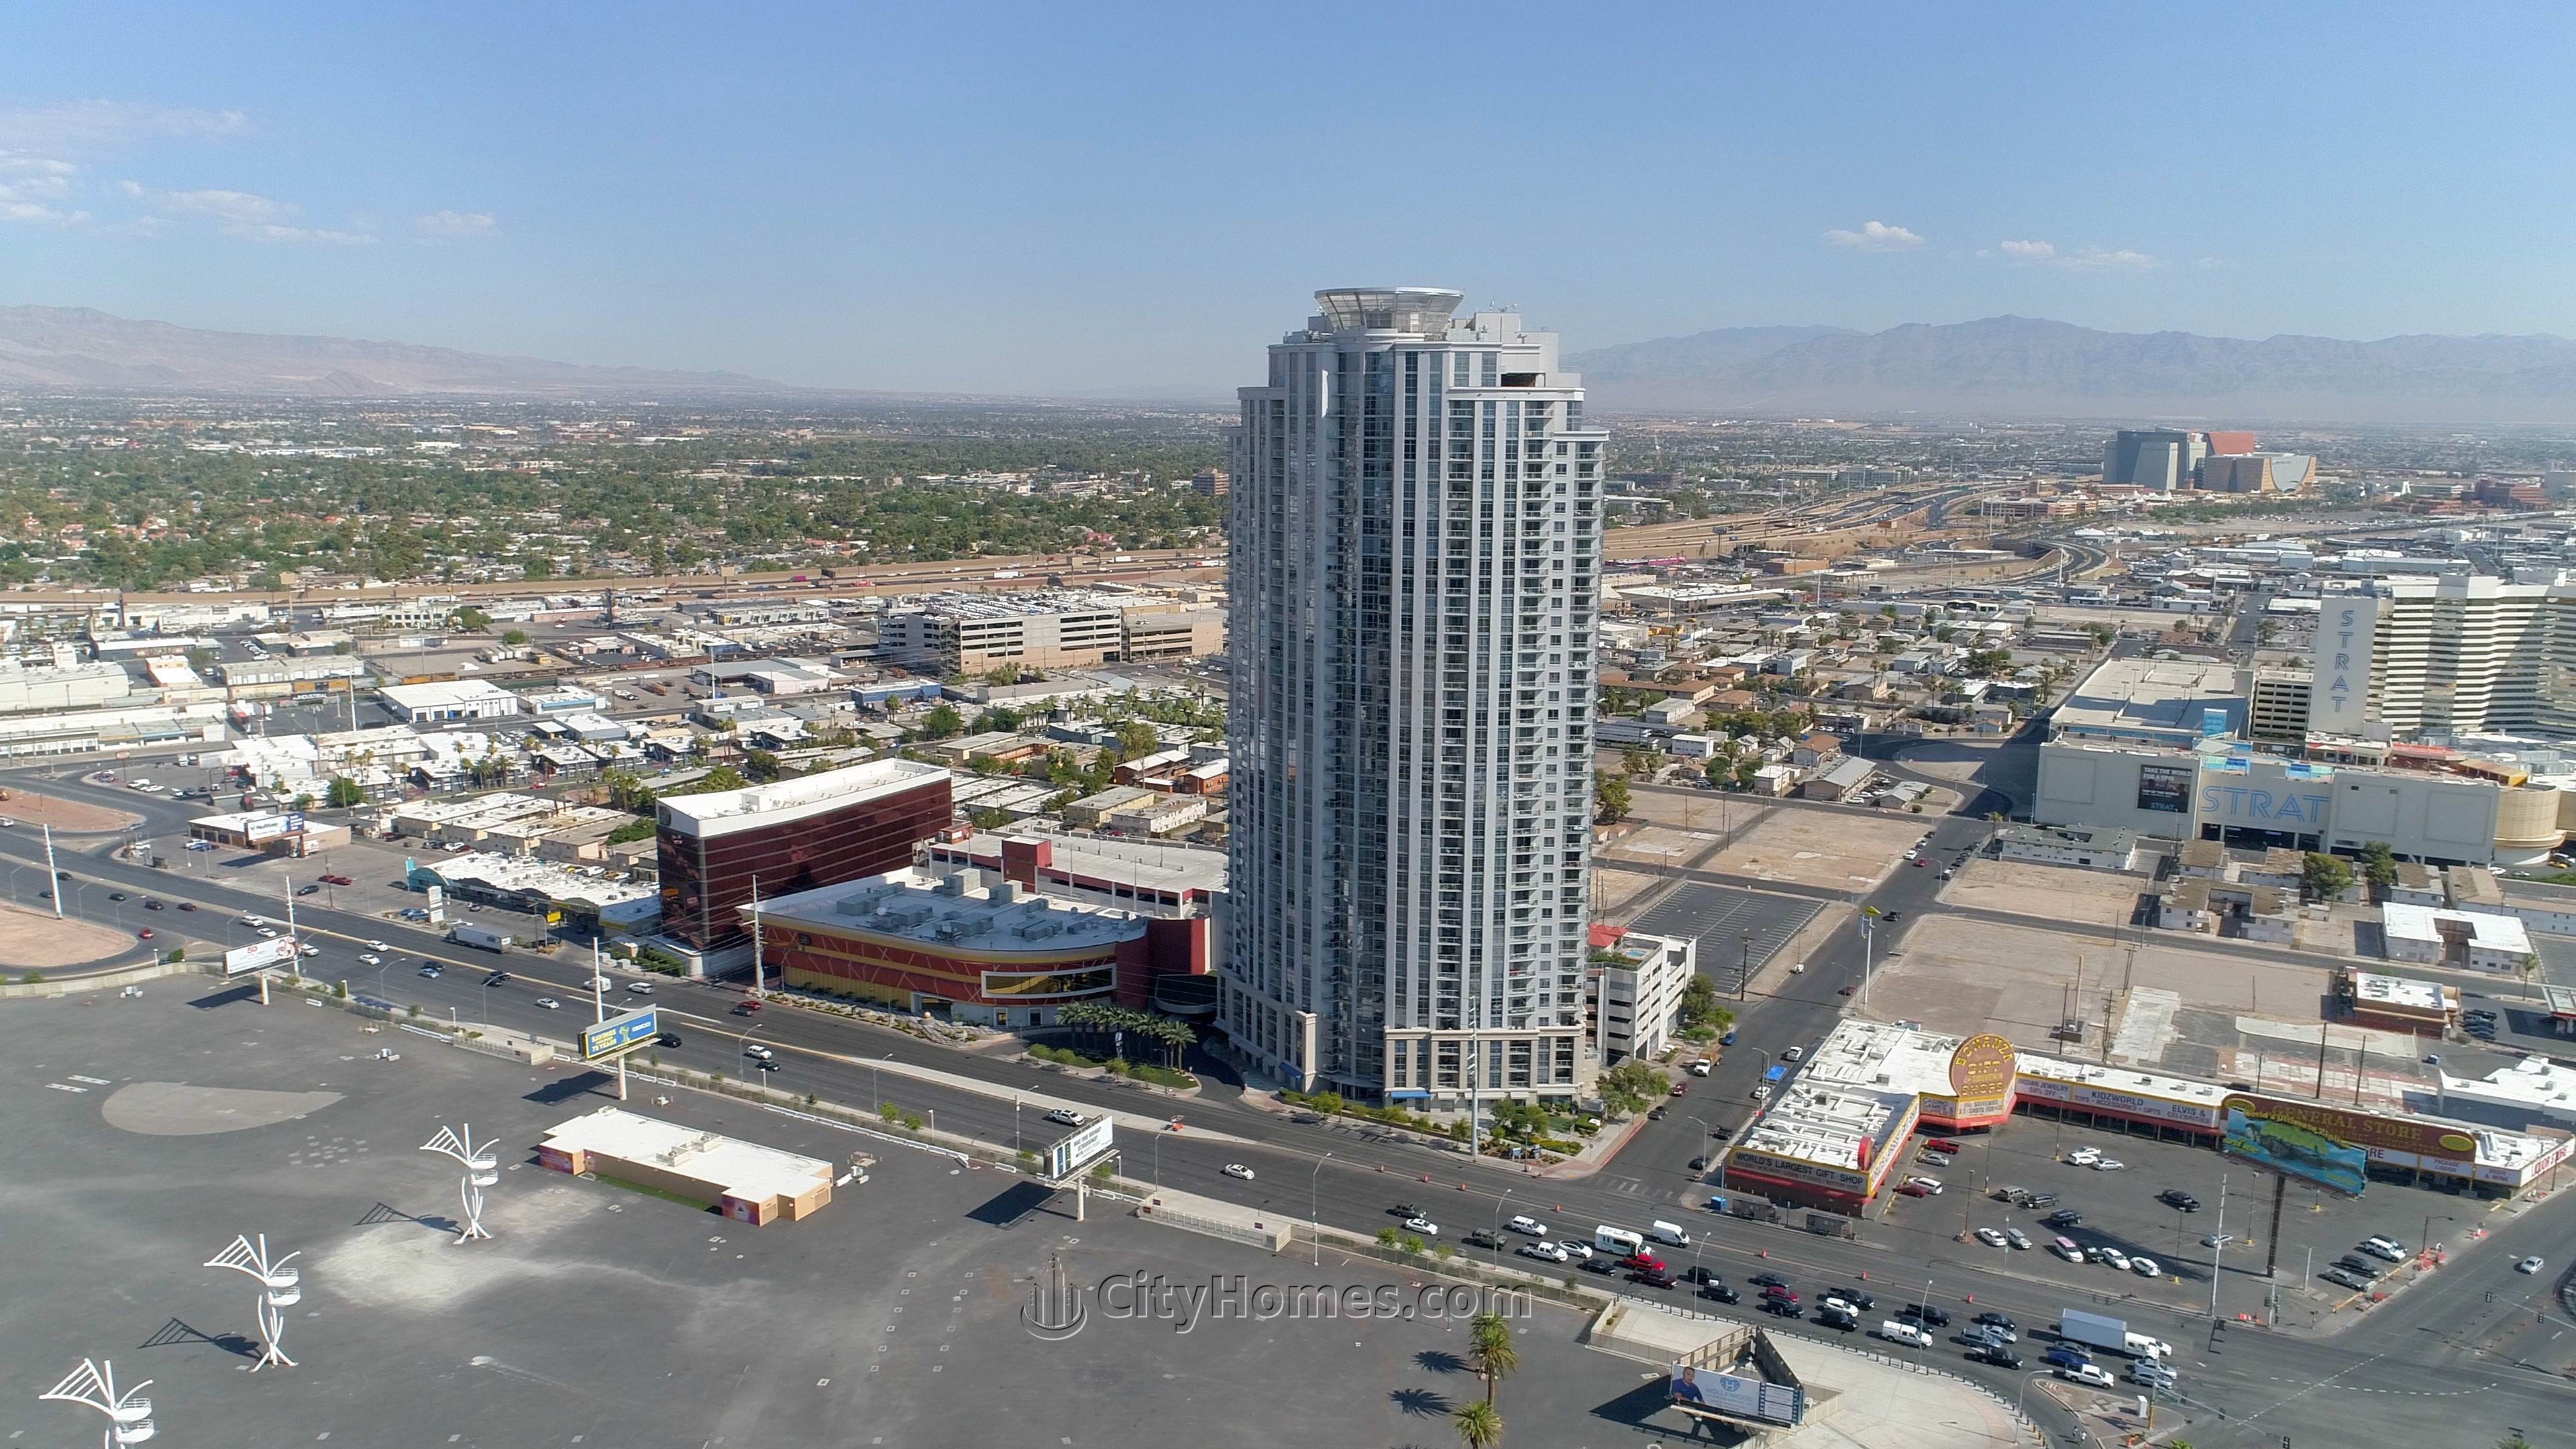 5. ALLURE CONDOS bâtiment à 200 W Sahara Ave, Las Vegas, NV 89102